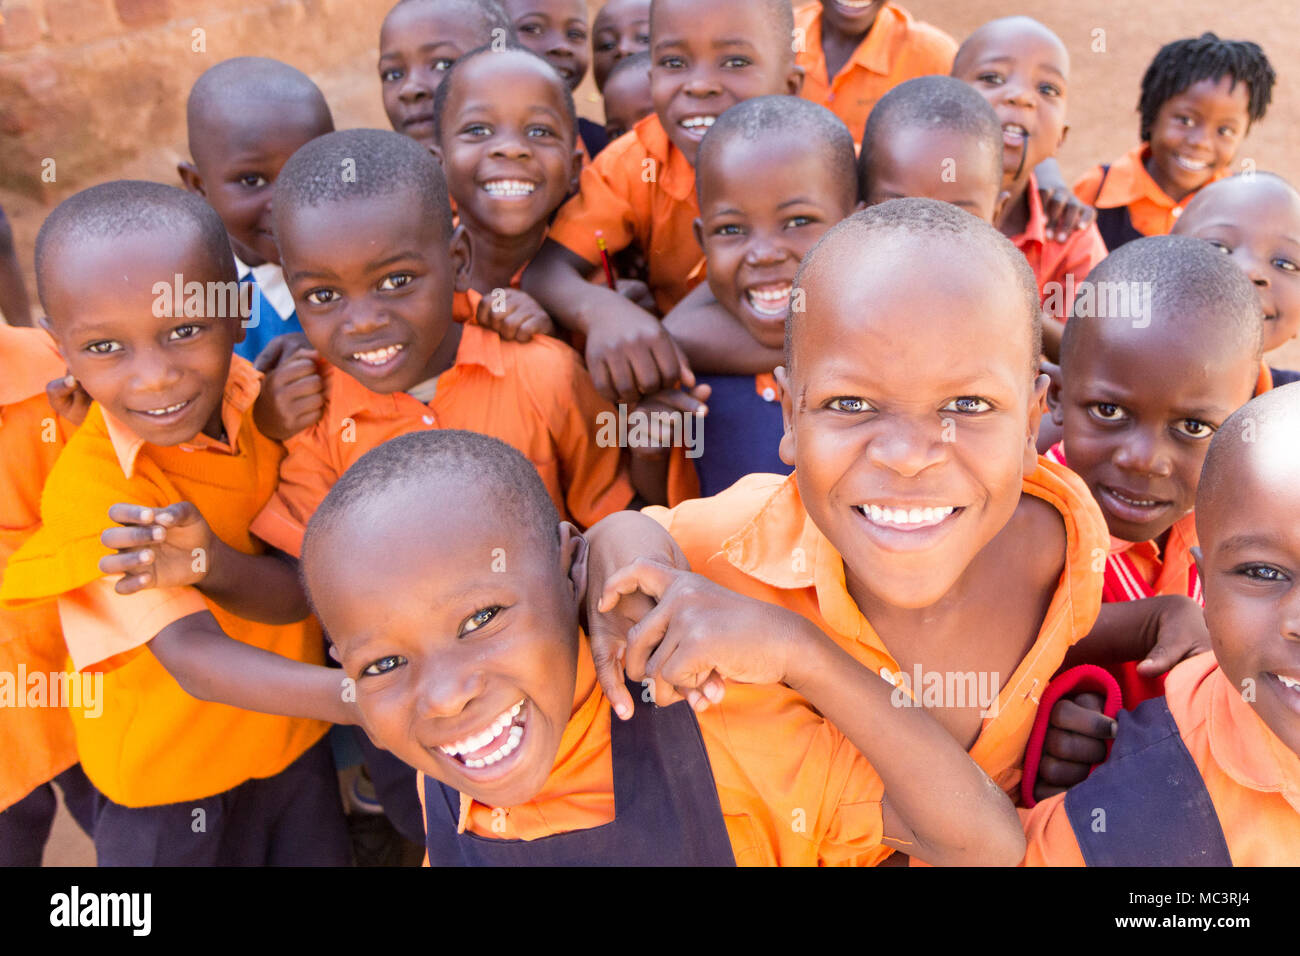 L'Ouganda. 13 juin 2017. Un groupe d'heureux enfants d'une école primaire sourire, rire et forme dans une école primaire. Banque D'Images